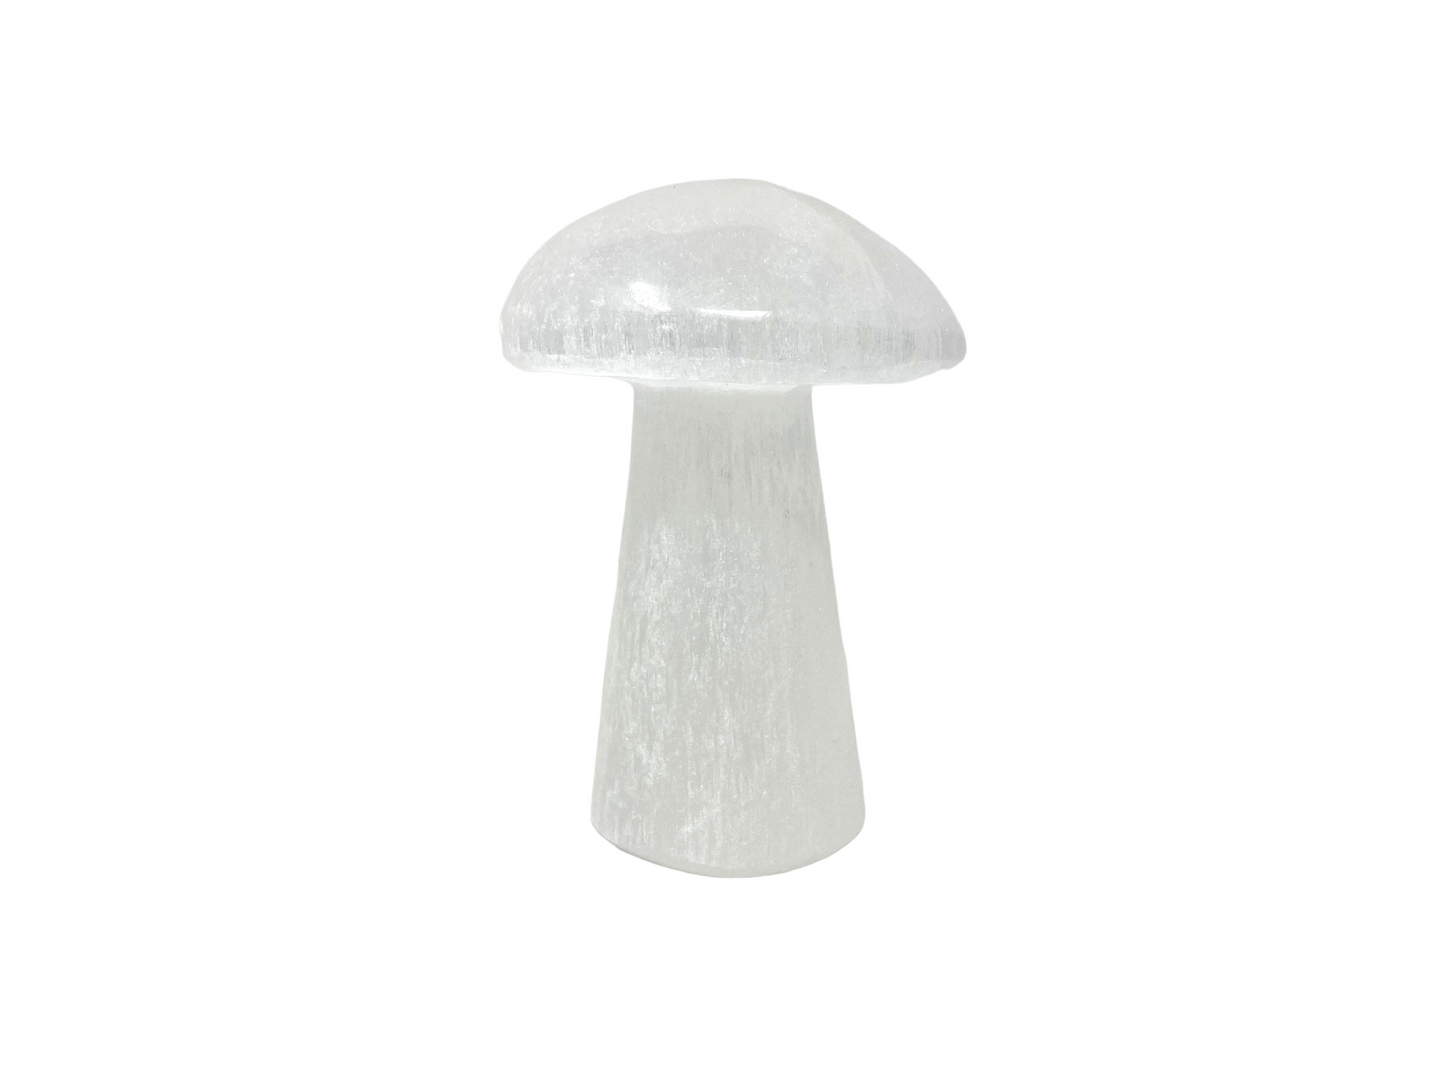 Selenite Mushrooms